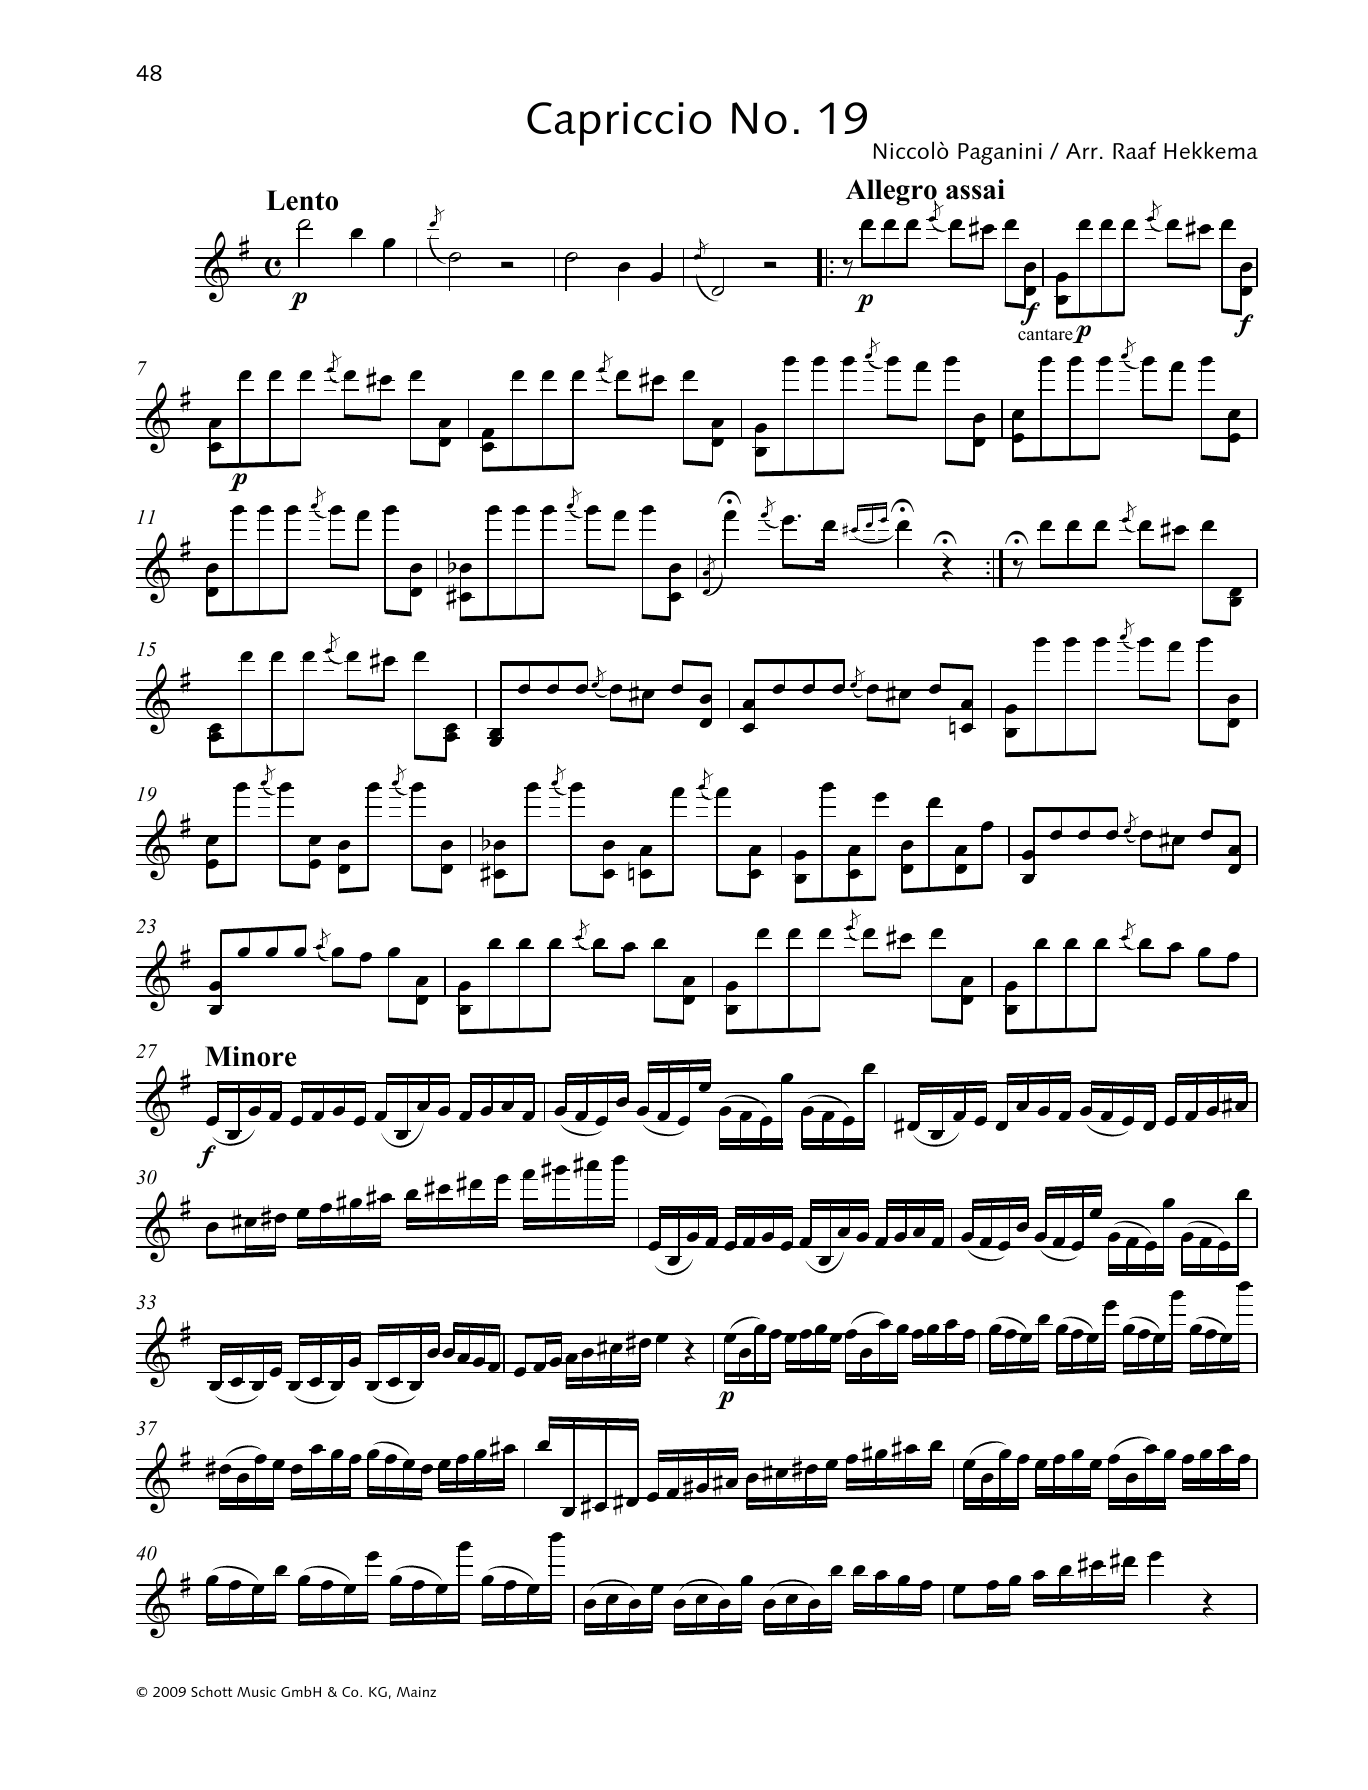 Download Niccolo Paganini Capriccio No. 19 Sheet Music